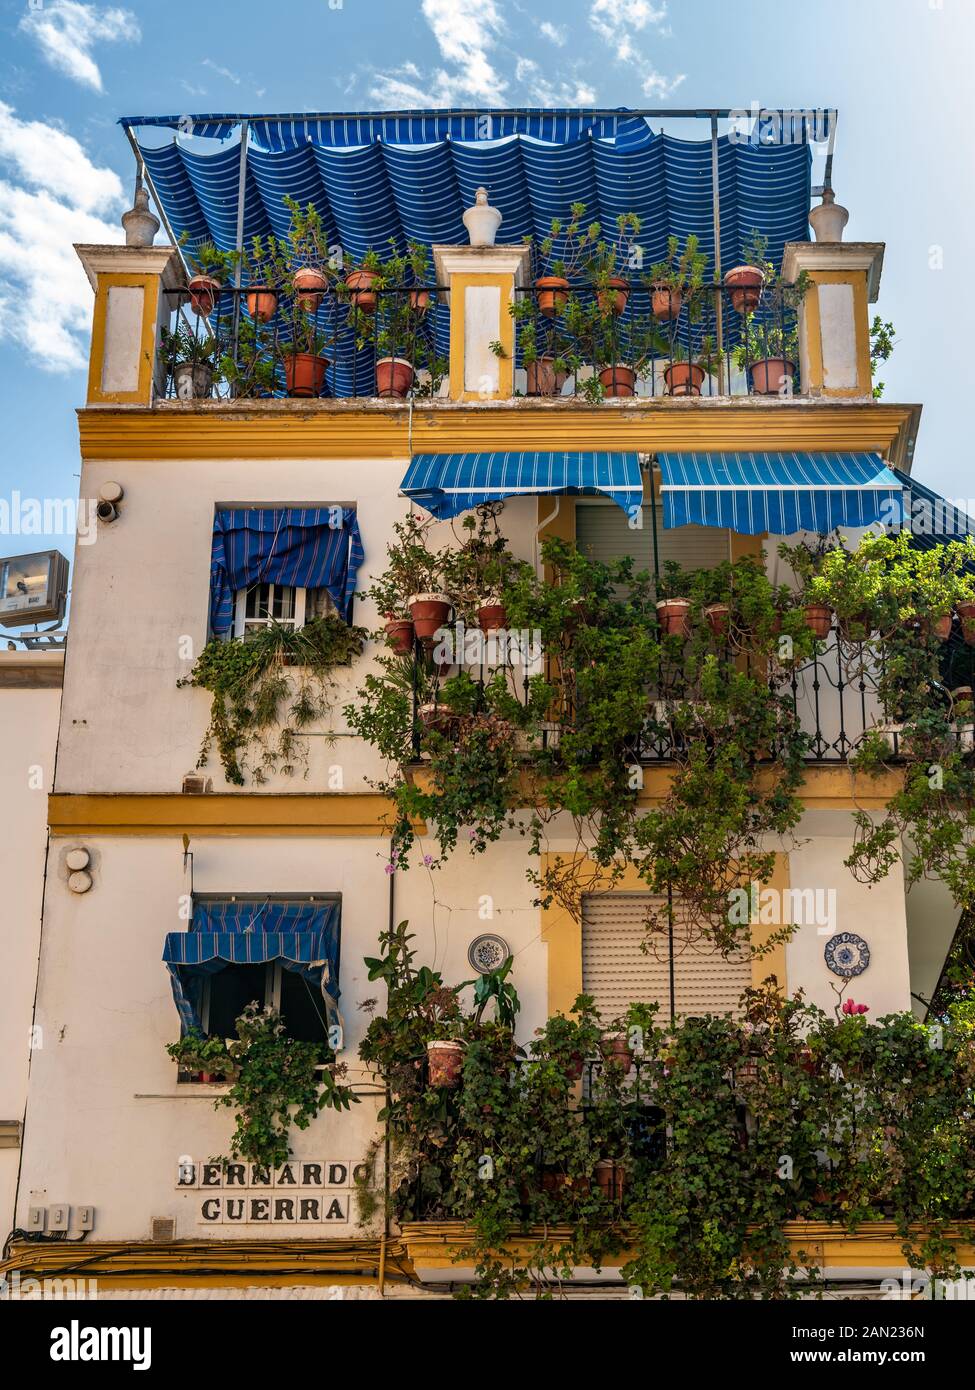 Eine lebendige blaue Pergola bedeckt einen grünen Dachgarten eines Hauses an der Ecke Calle Bernado Guerra und Calle Pelay Correa, Triana. Stockfoto